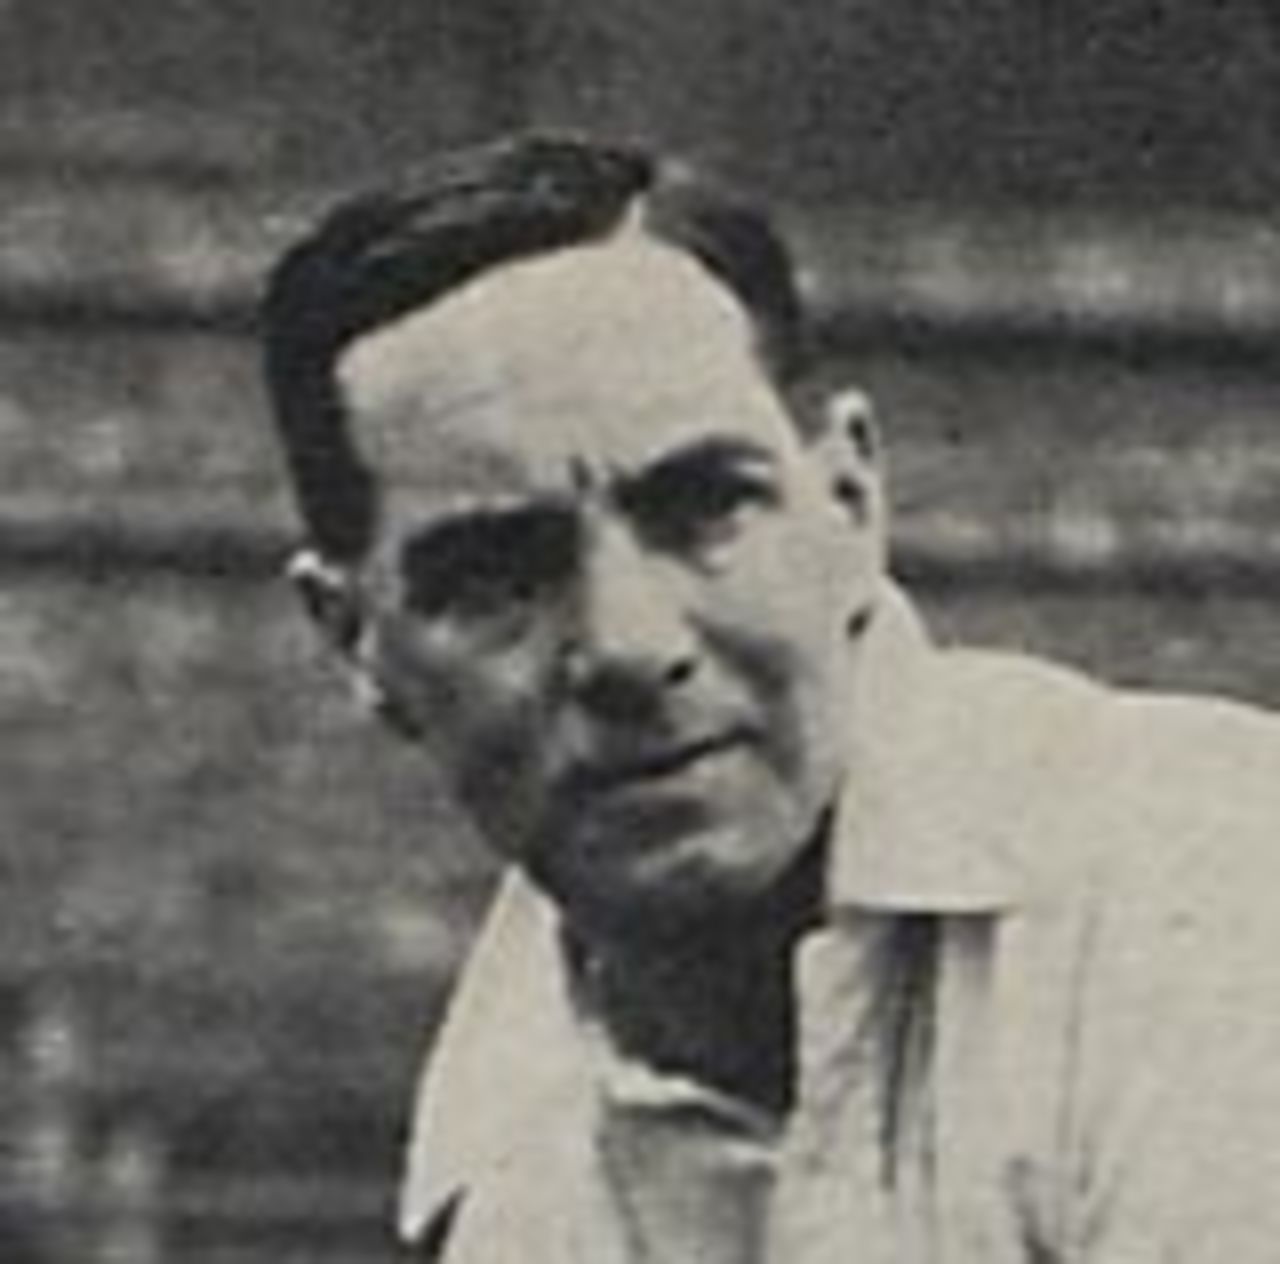 Herbert Sutcliffe